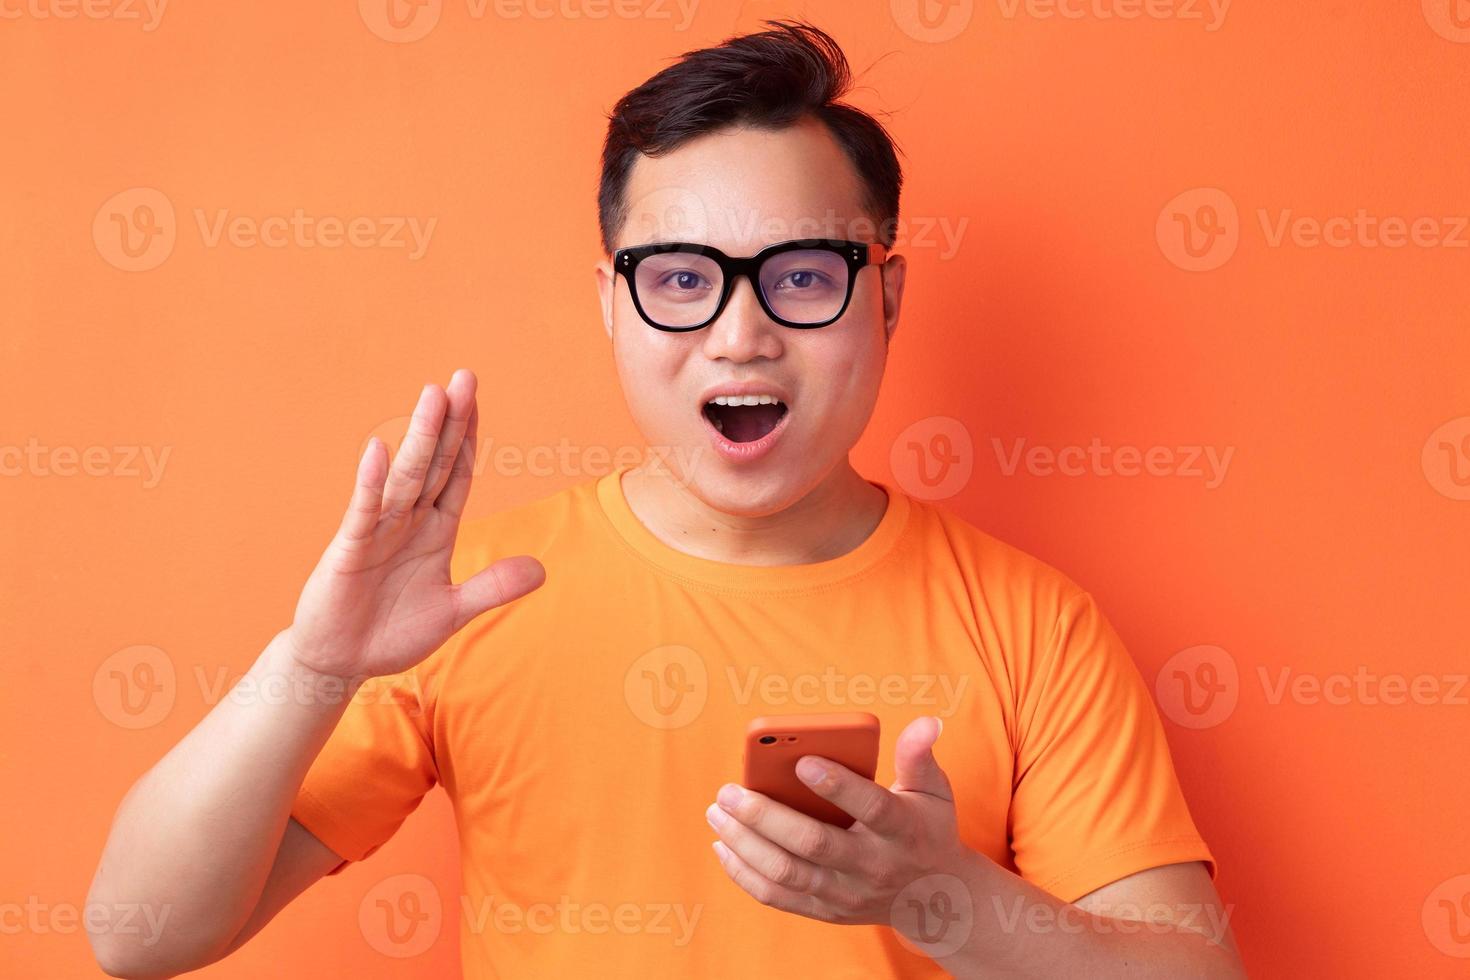 jonge aziatische man die de telefoon vasthoudt met een verbaasde uitdrukking foto